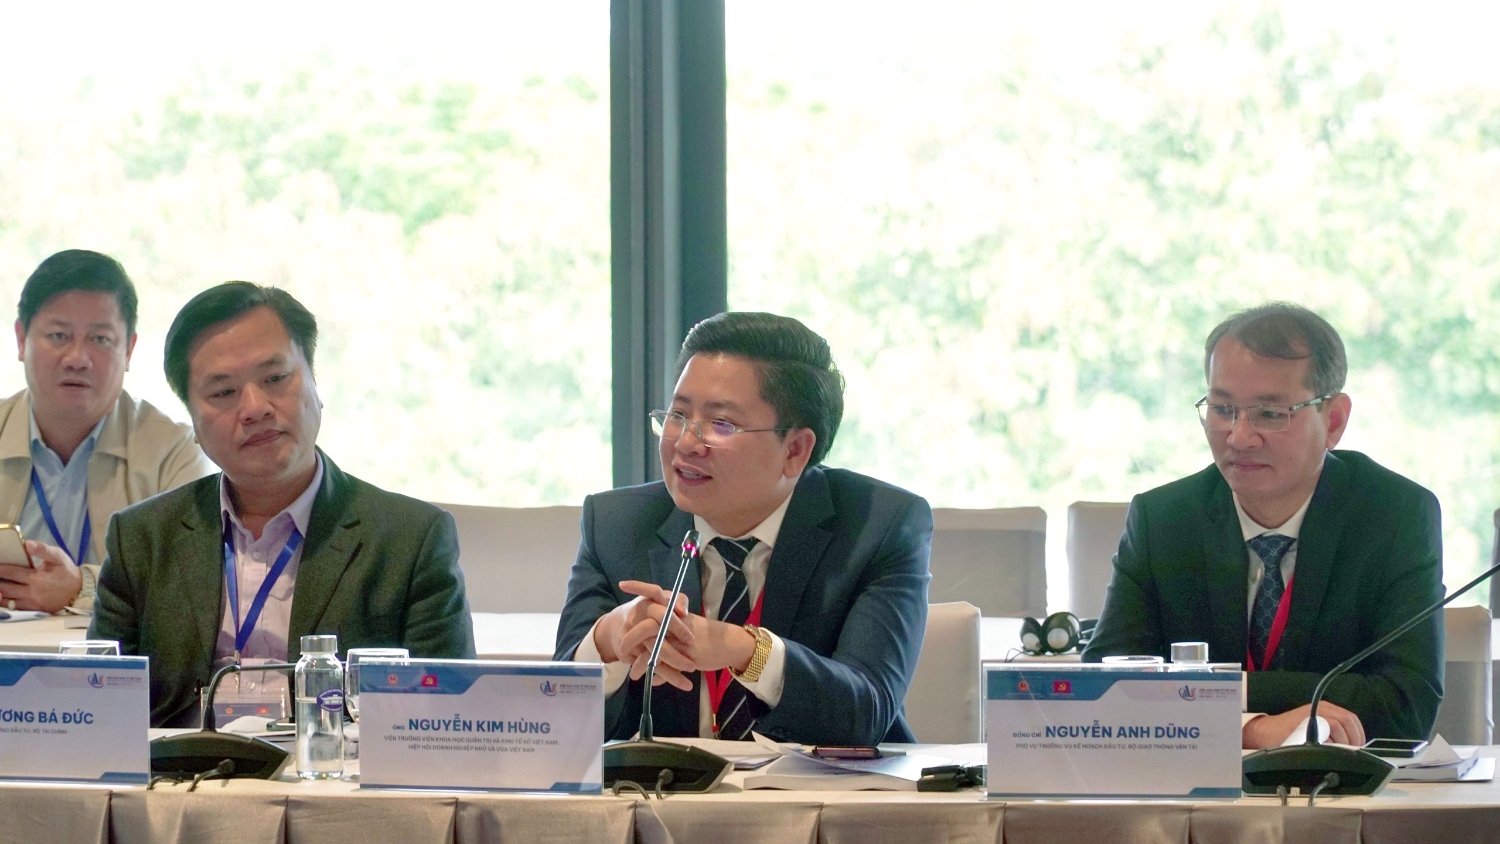 Ông Nguyễn Kim Hùng đề xuất giải pháp cho doanh nghiệp SME tham gia đầu tư công